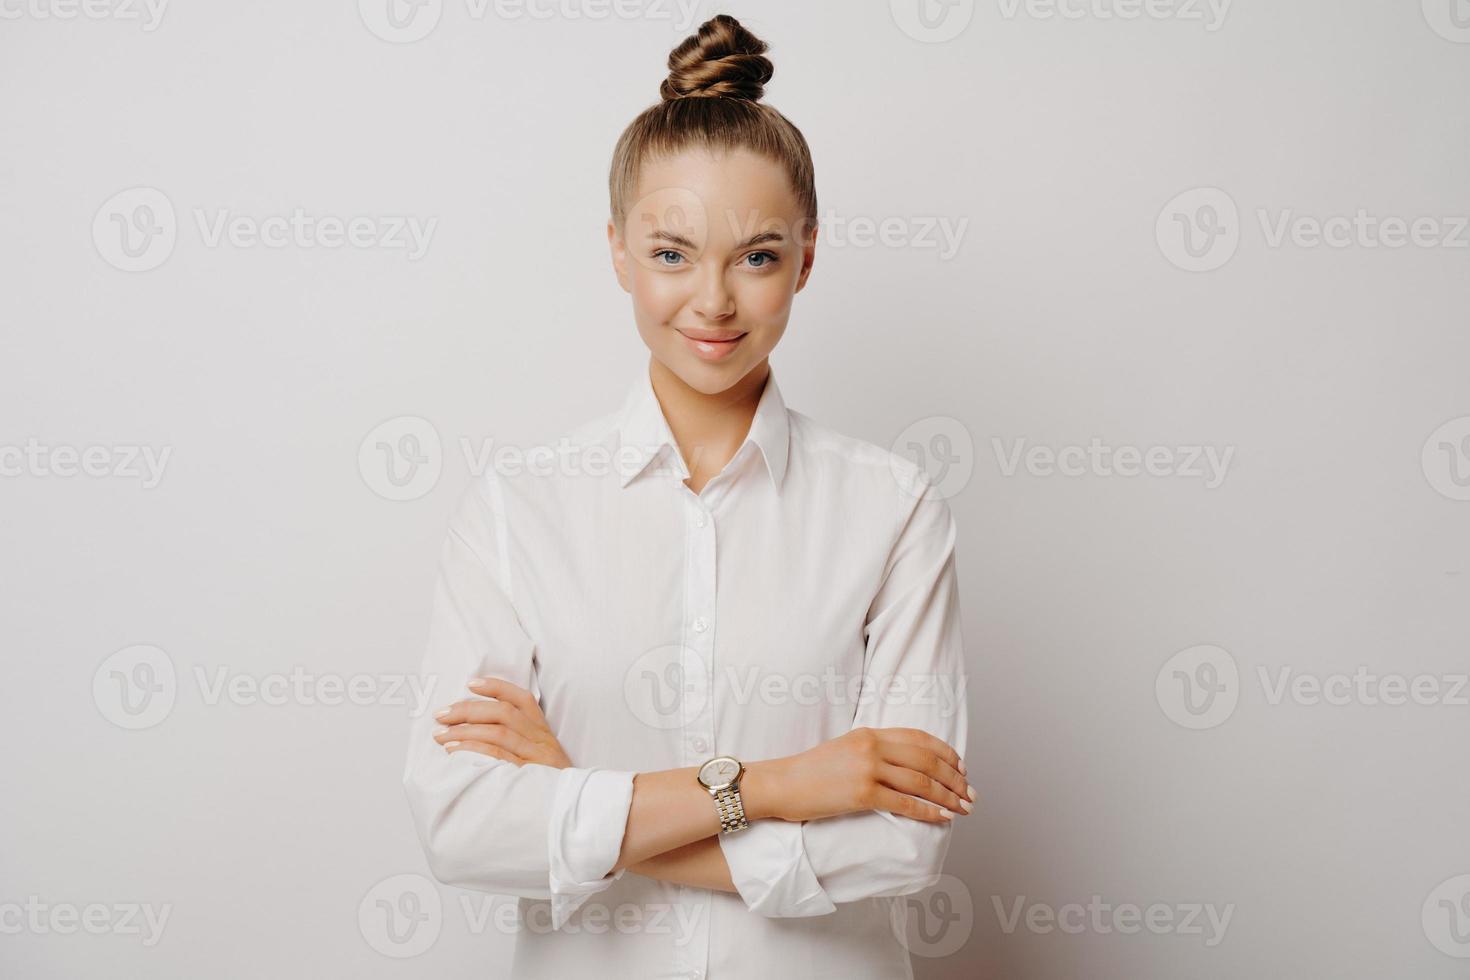 manager femminile fiducioso in camicia bianca con le braccia incrociate foto